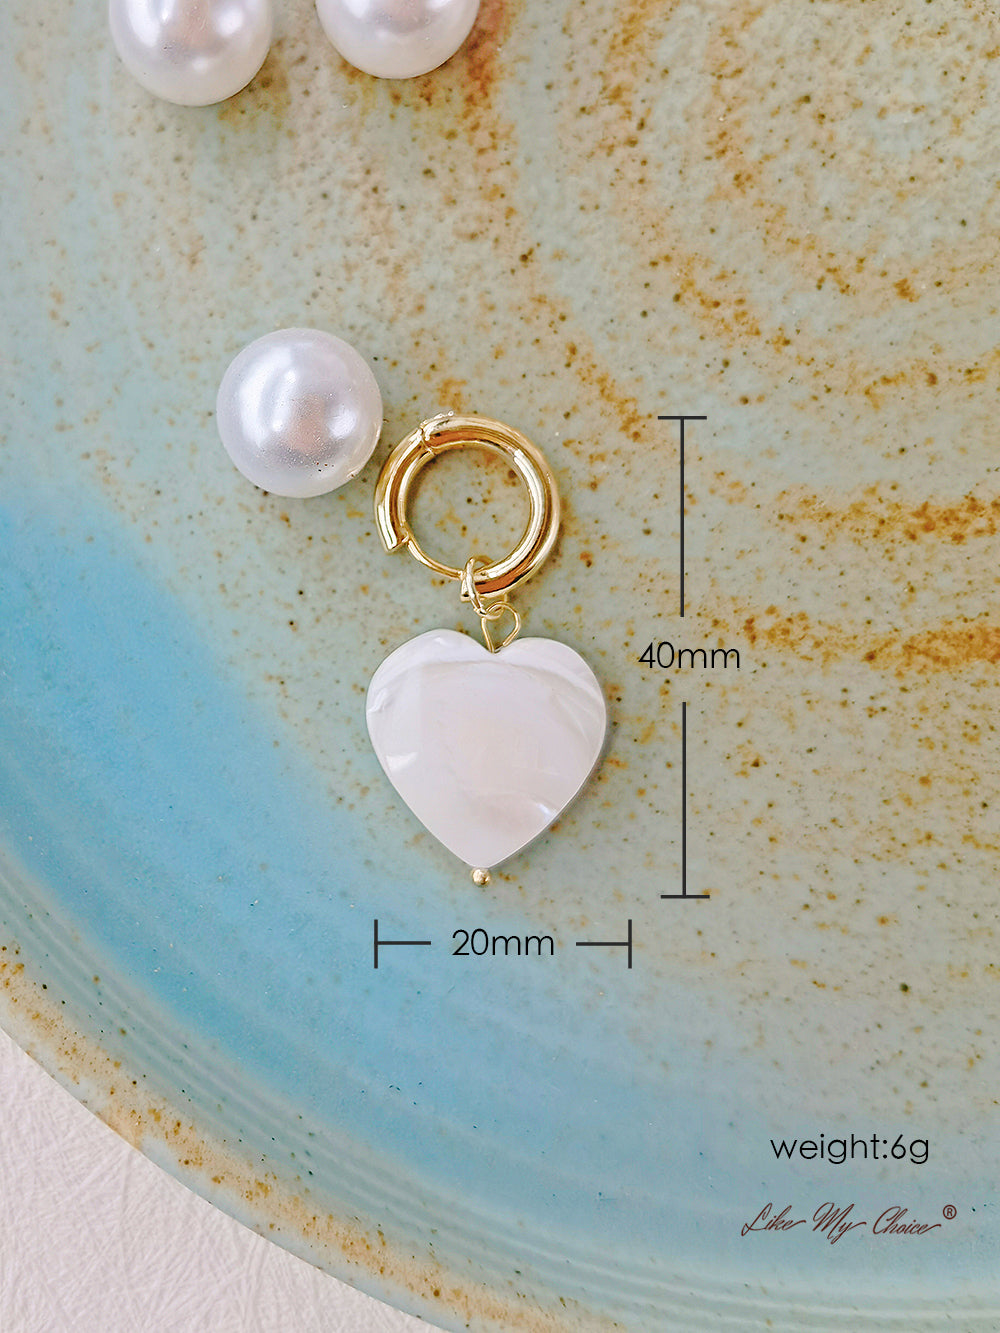 Drahokamové sladkovodní perly Vintage náušnice ve tvaru srdce: Jednoduché a elegantní